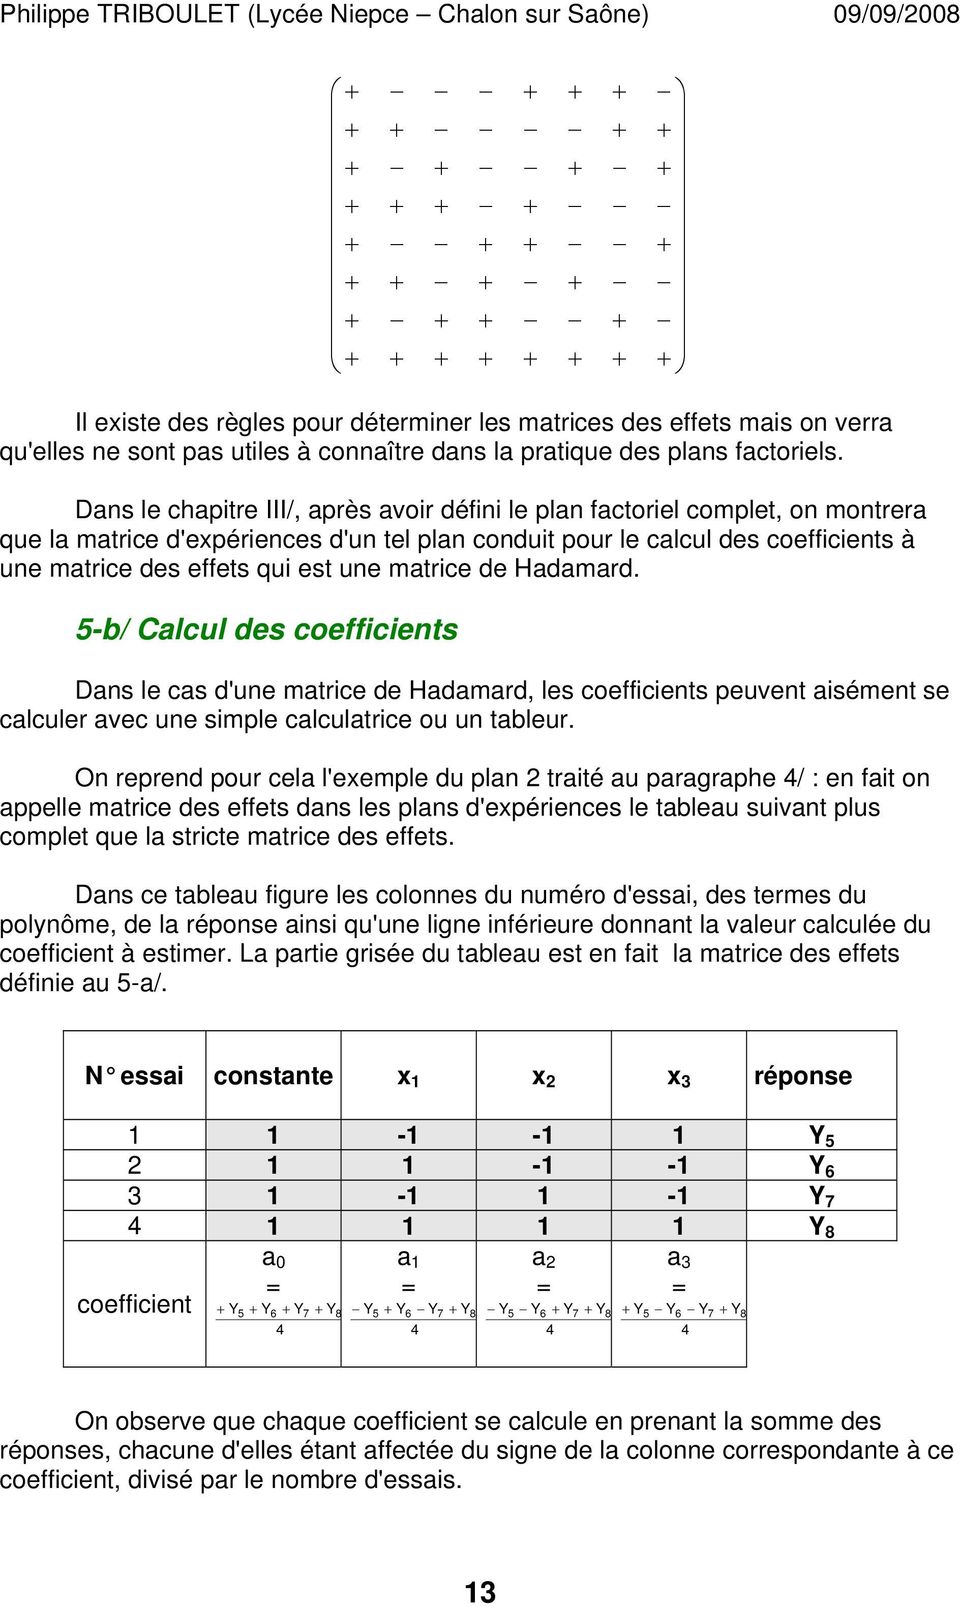 une matrice de Hadamard. 5-b/ Calcul des coefficients Dans le cas d'une matrice de Hadamard, les coefficients peuvent aisément se calculer avec une simple calculatrice ou un tableur.